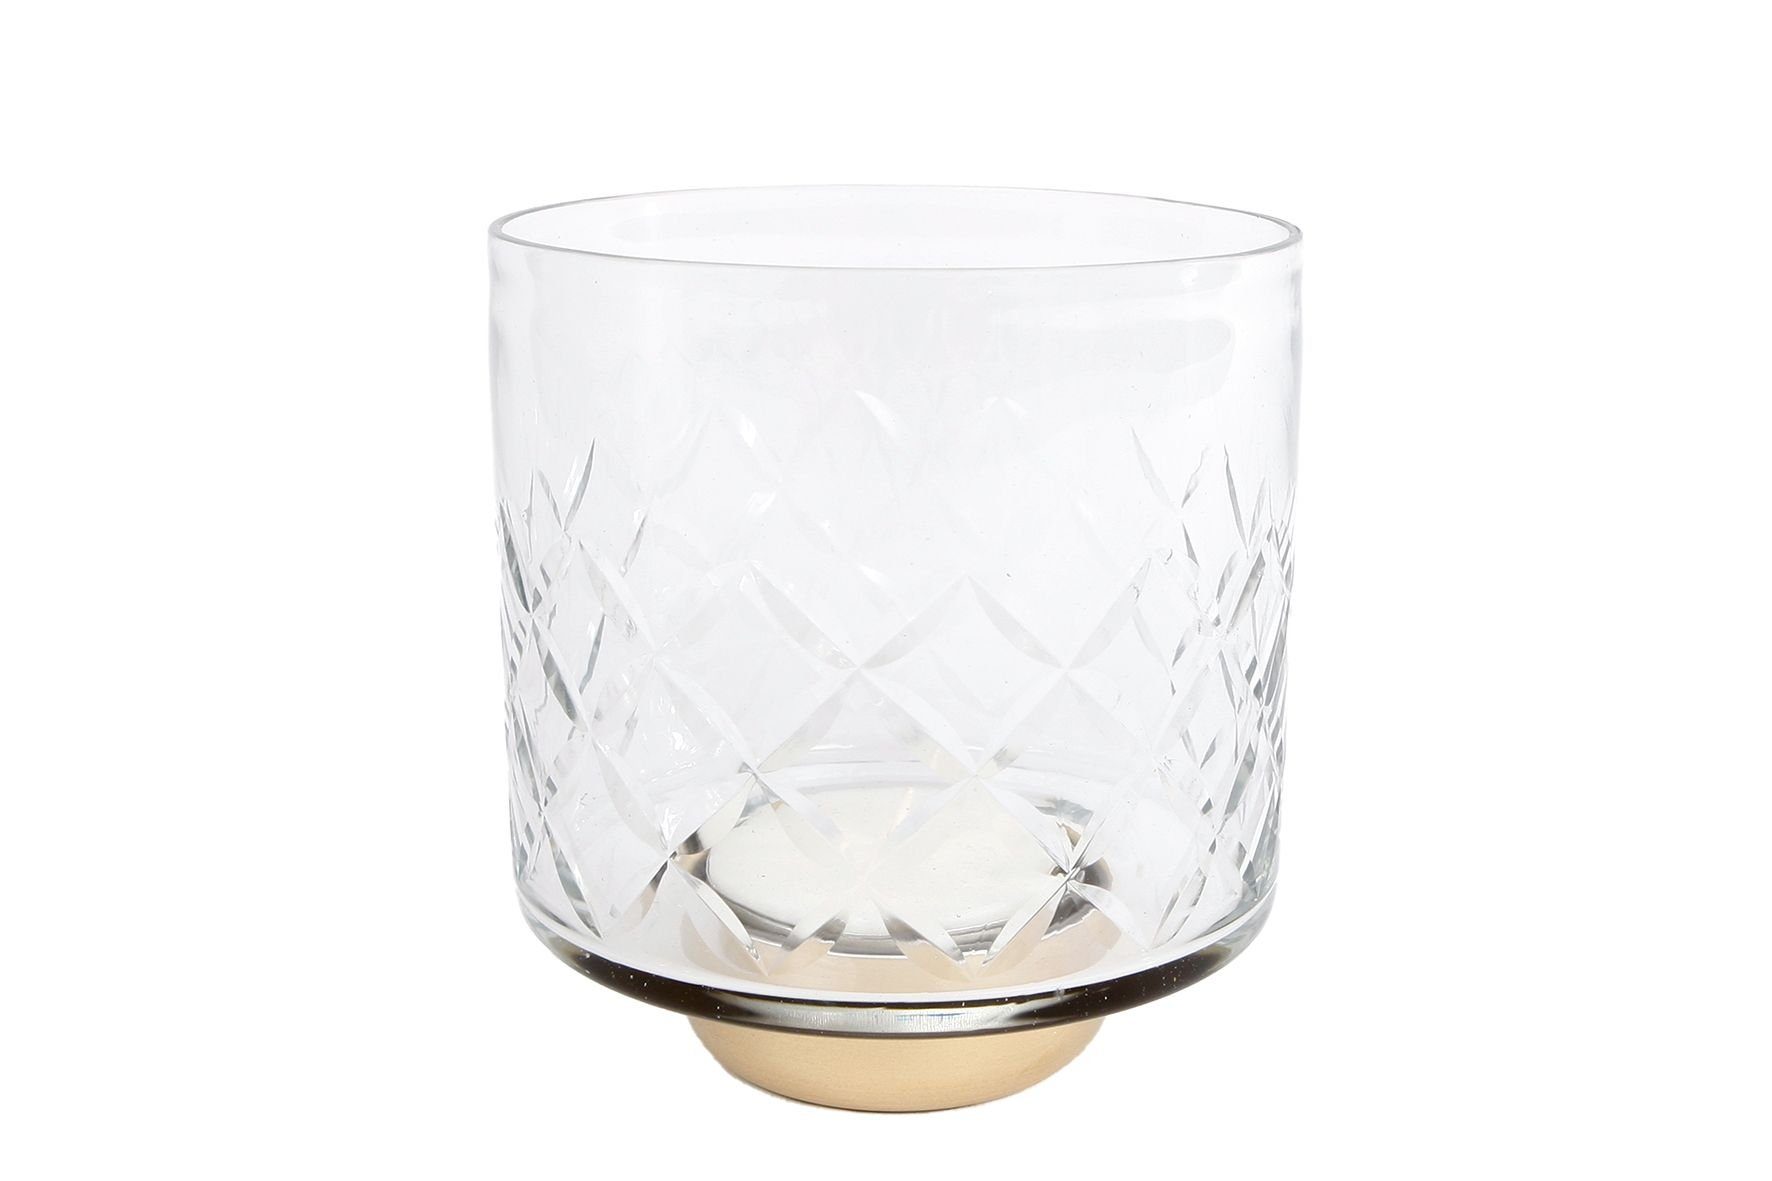 Rivanto Teelichthalter Ria (1 St), Teelichtständer im klassischen Design, Größe M, Maße 11.5x11.5x13 cm | Teelichthalter